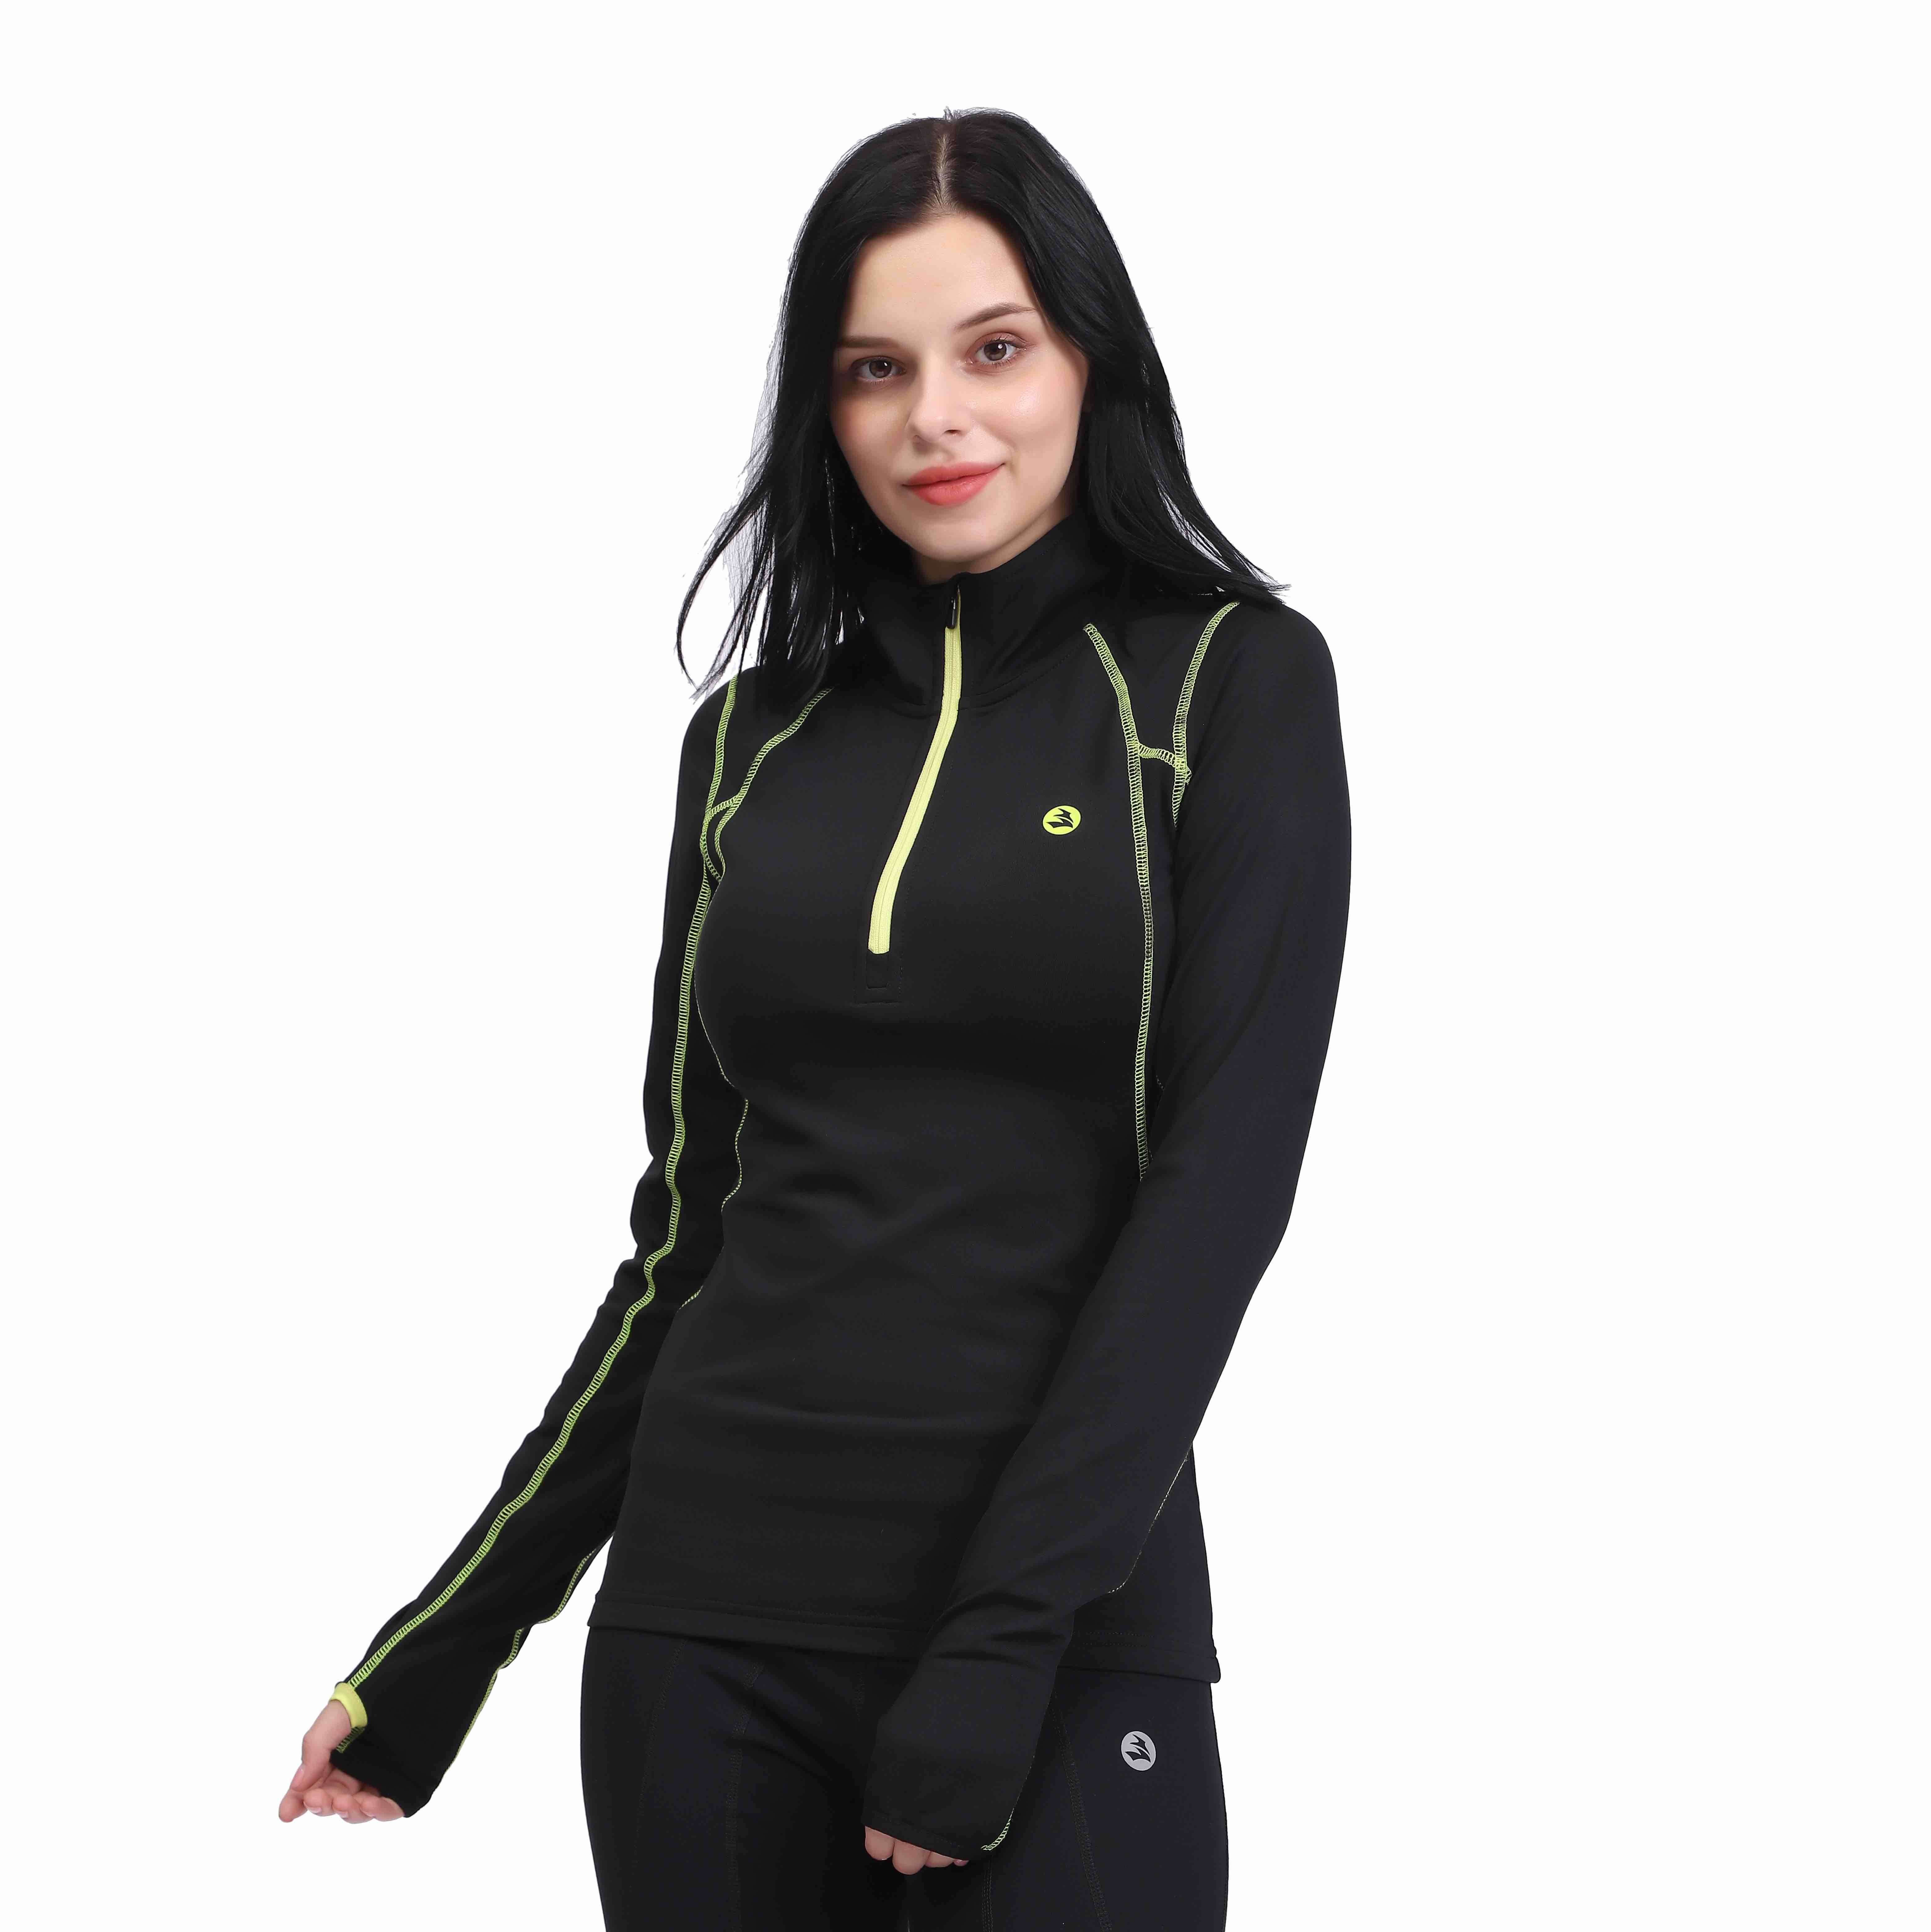 Women's Sport Slim Fit 1/2 Zip Fleece Lining Pullover Thermal Top